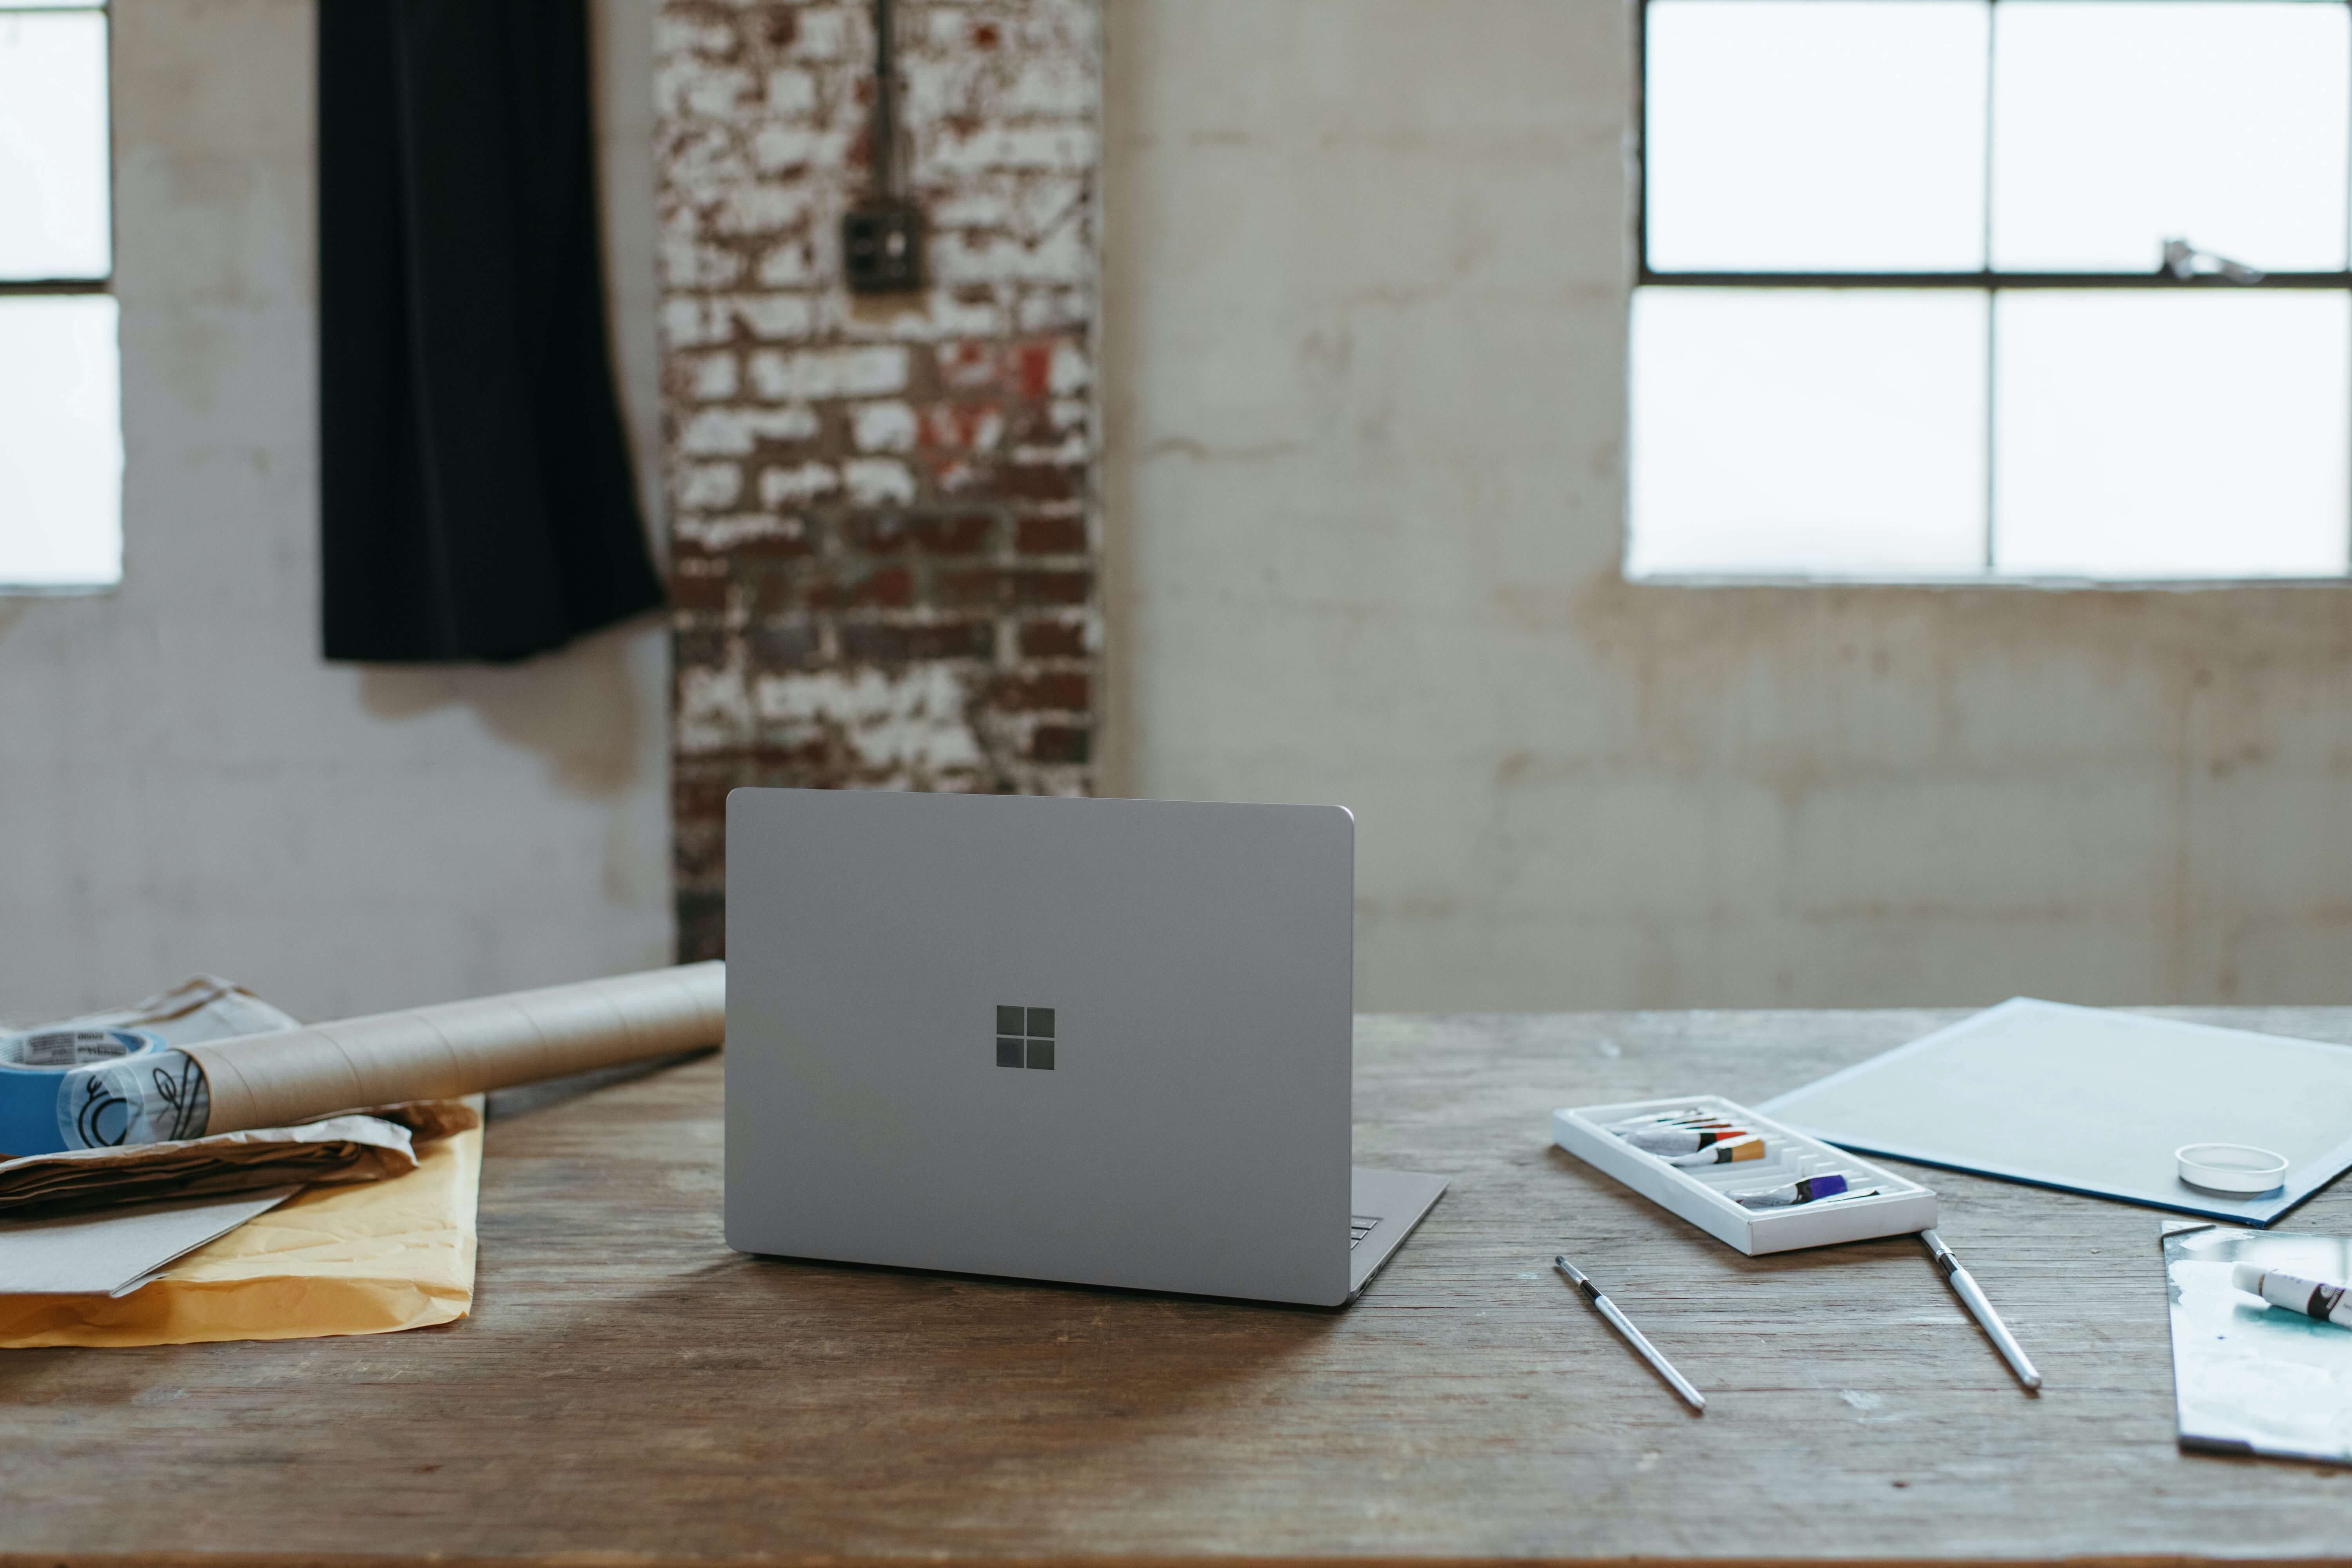 A Microsoft Surface laptop on a desk